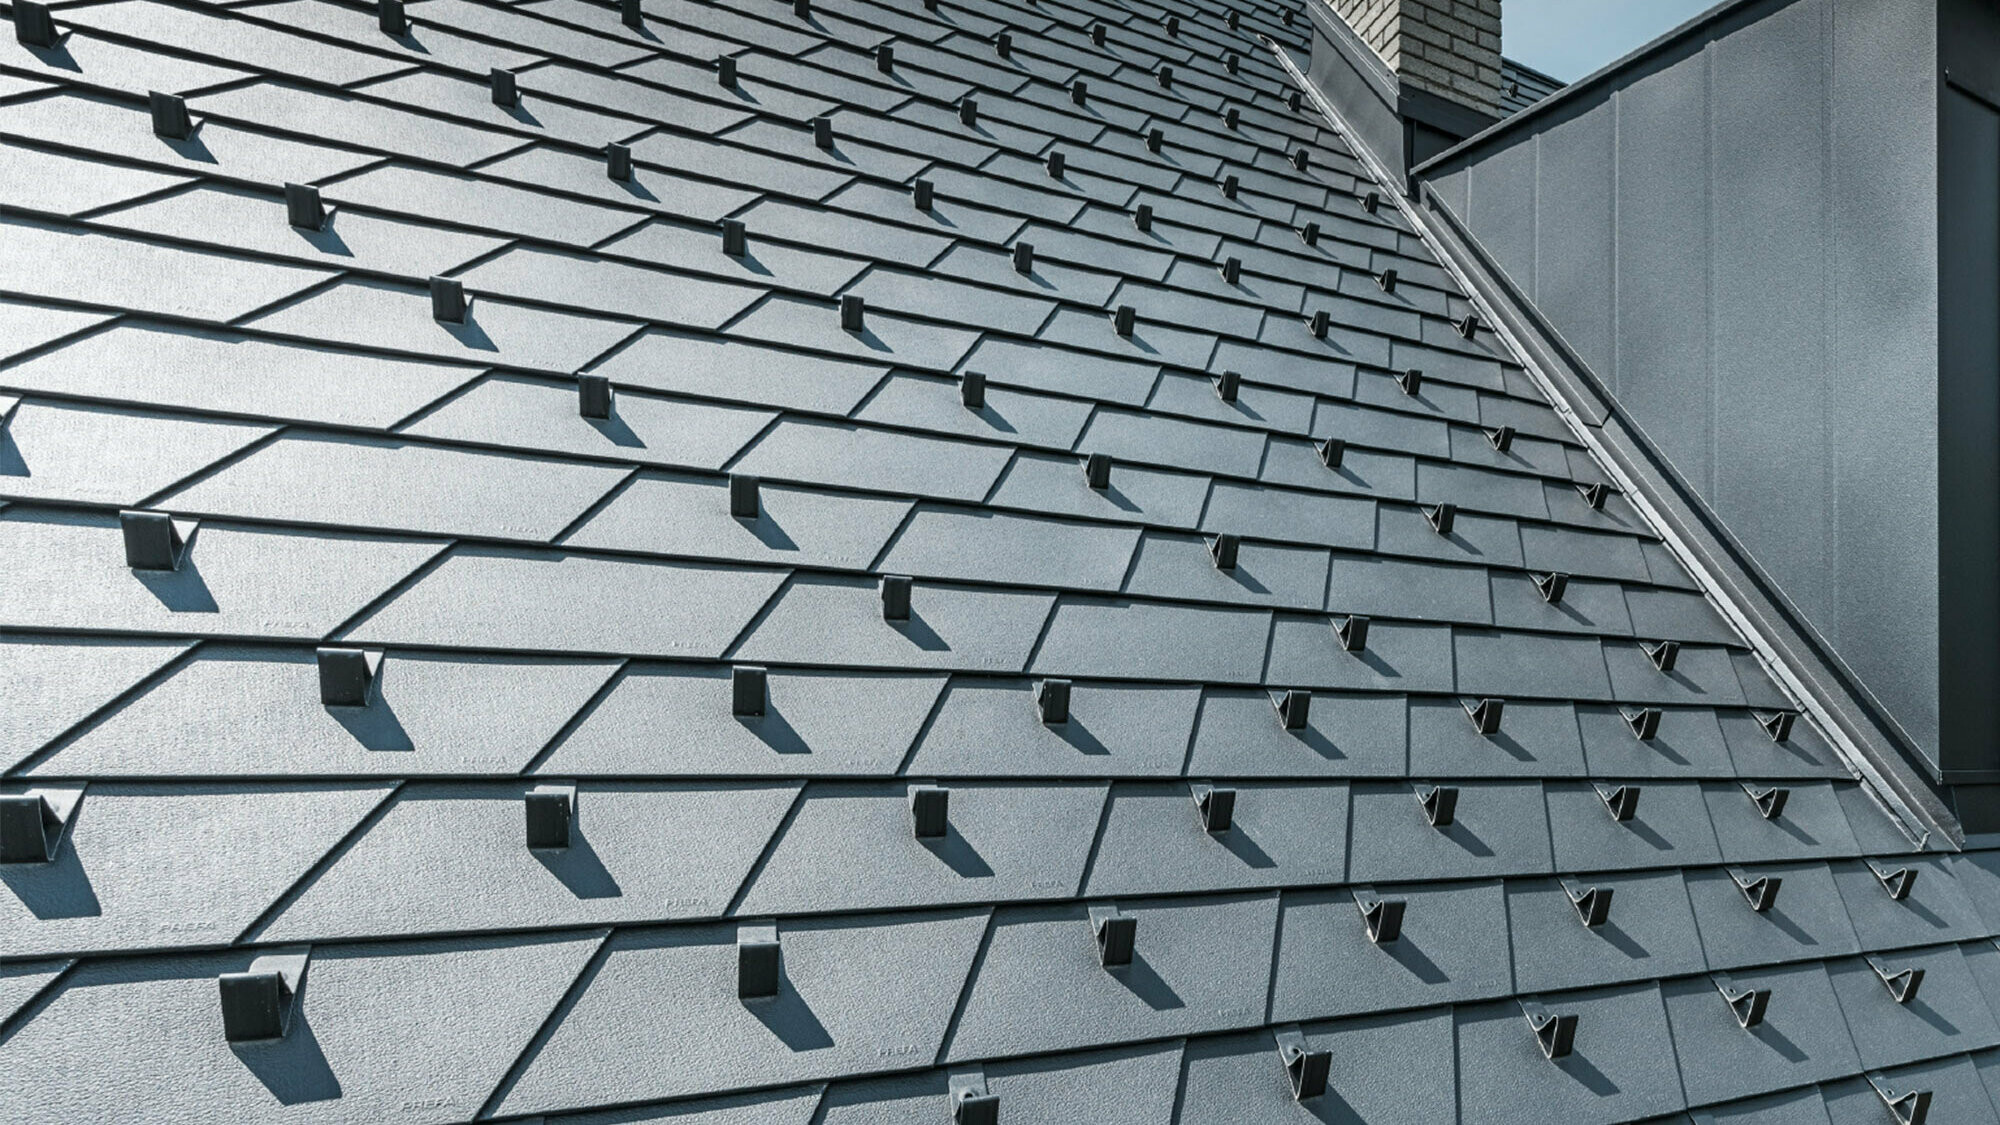 Rekonstrukce střechy s PREFA falcovaným šindelem v barvě P.10 černé včetně sněhových háků a vikýře, porytá hliníkovými prvky PREFA